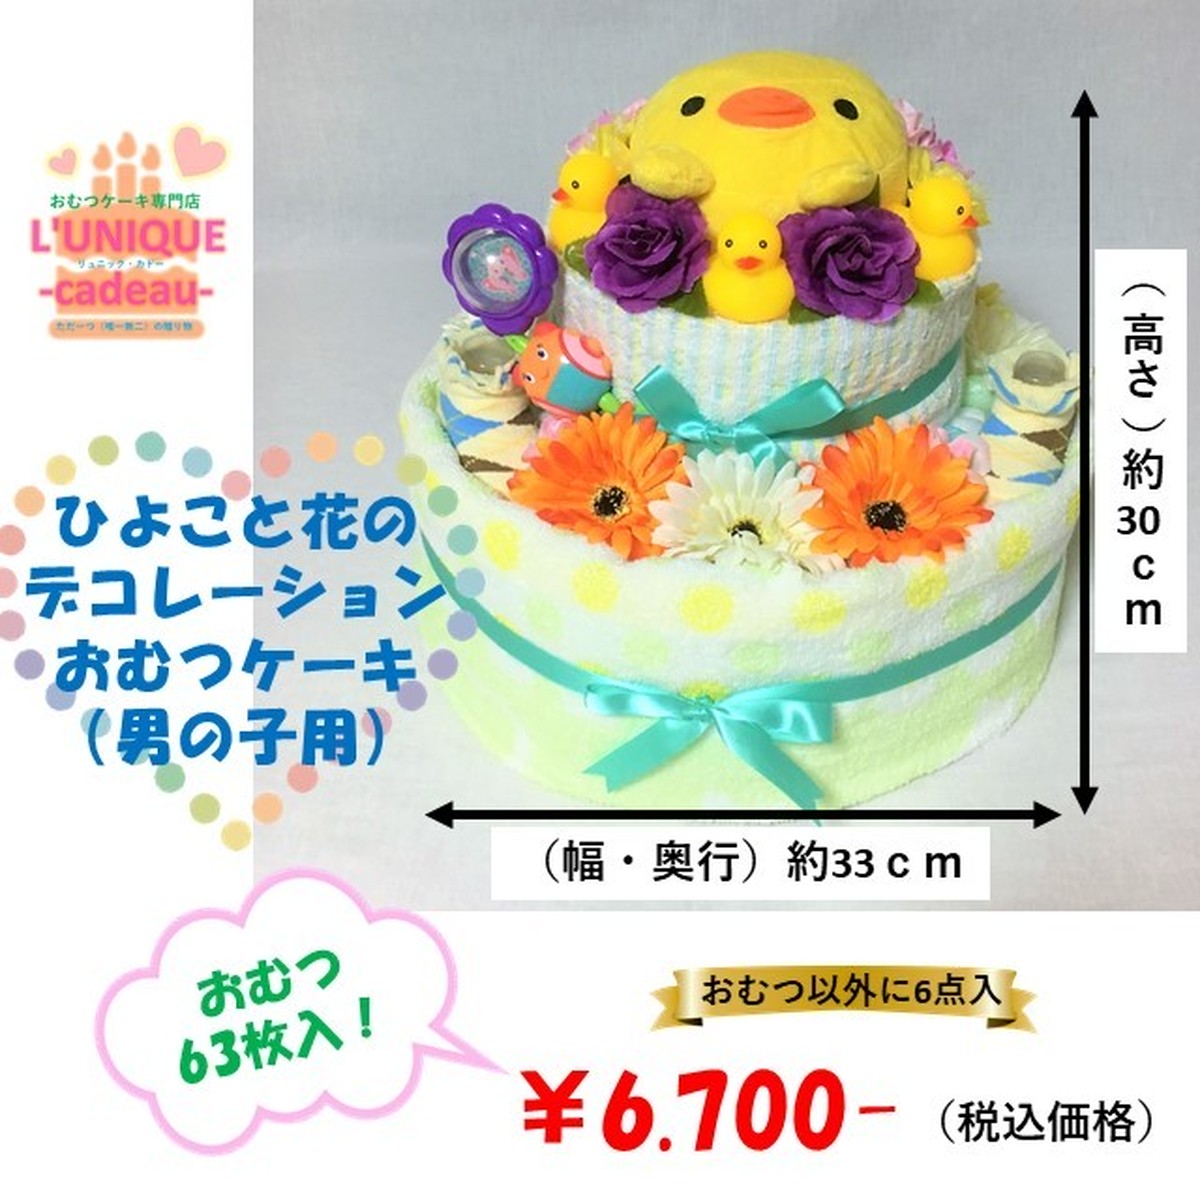 ひよこと花のデコレーションおむつケーキ 男の子用 2段 おむつ63枚入り L Unique Cadeau